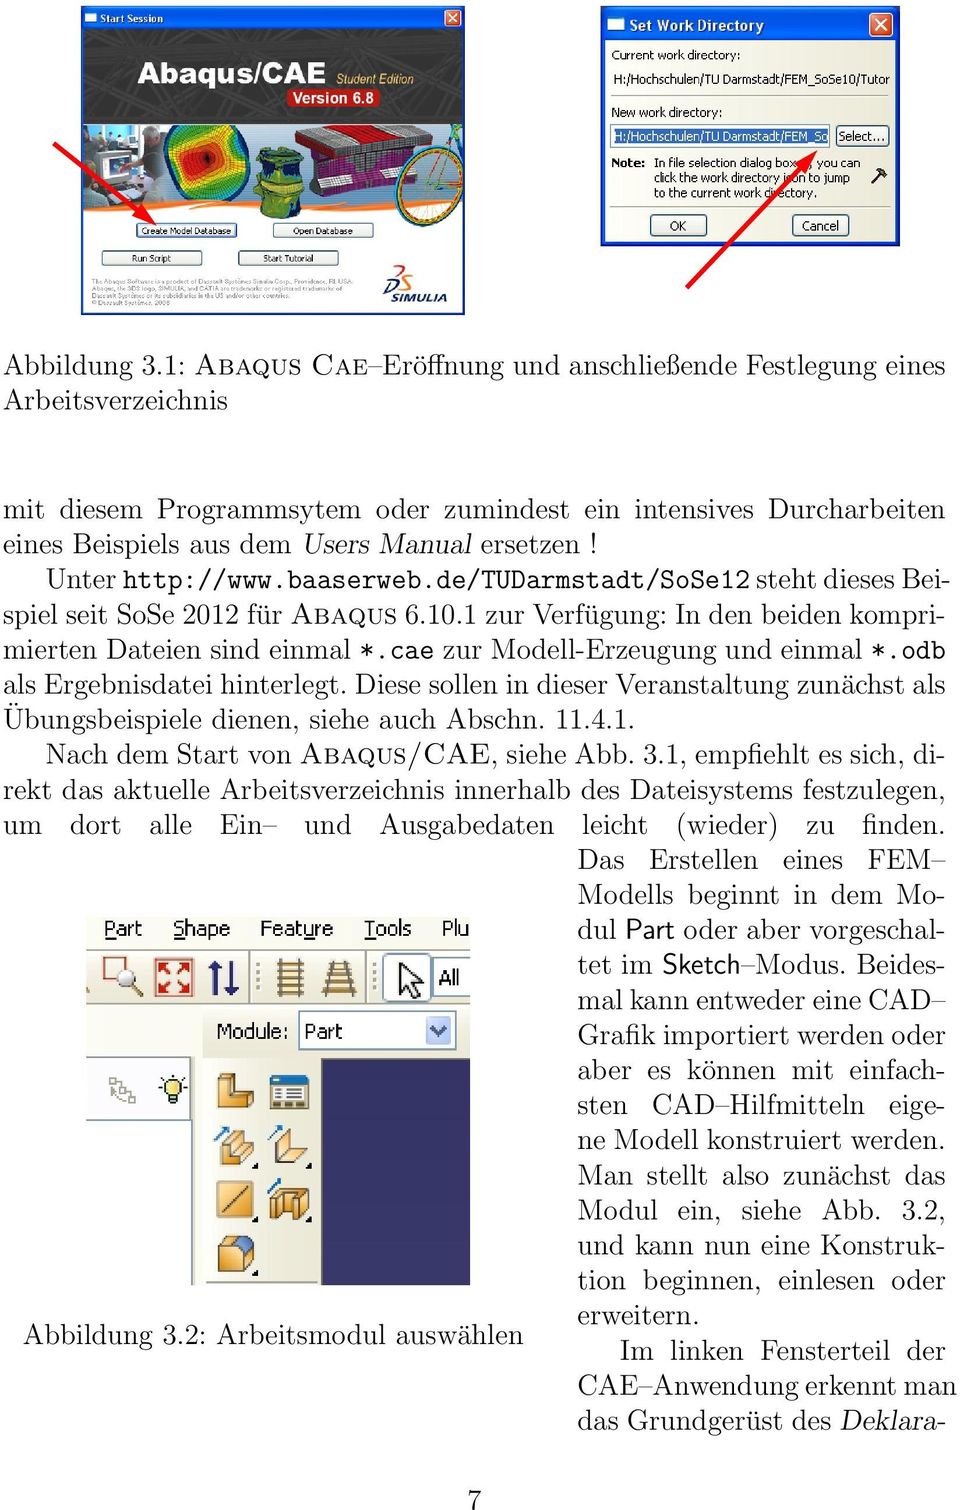 Unter http://www.baaserweb.de/tudarmstadt/sose12 steht dieses Beispiel seit SoSe 2012 für Abaqus 6.10.1 zur Verfügung: In den beiden komprimierten Dateien sind einmal *.